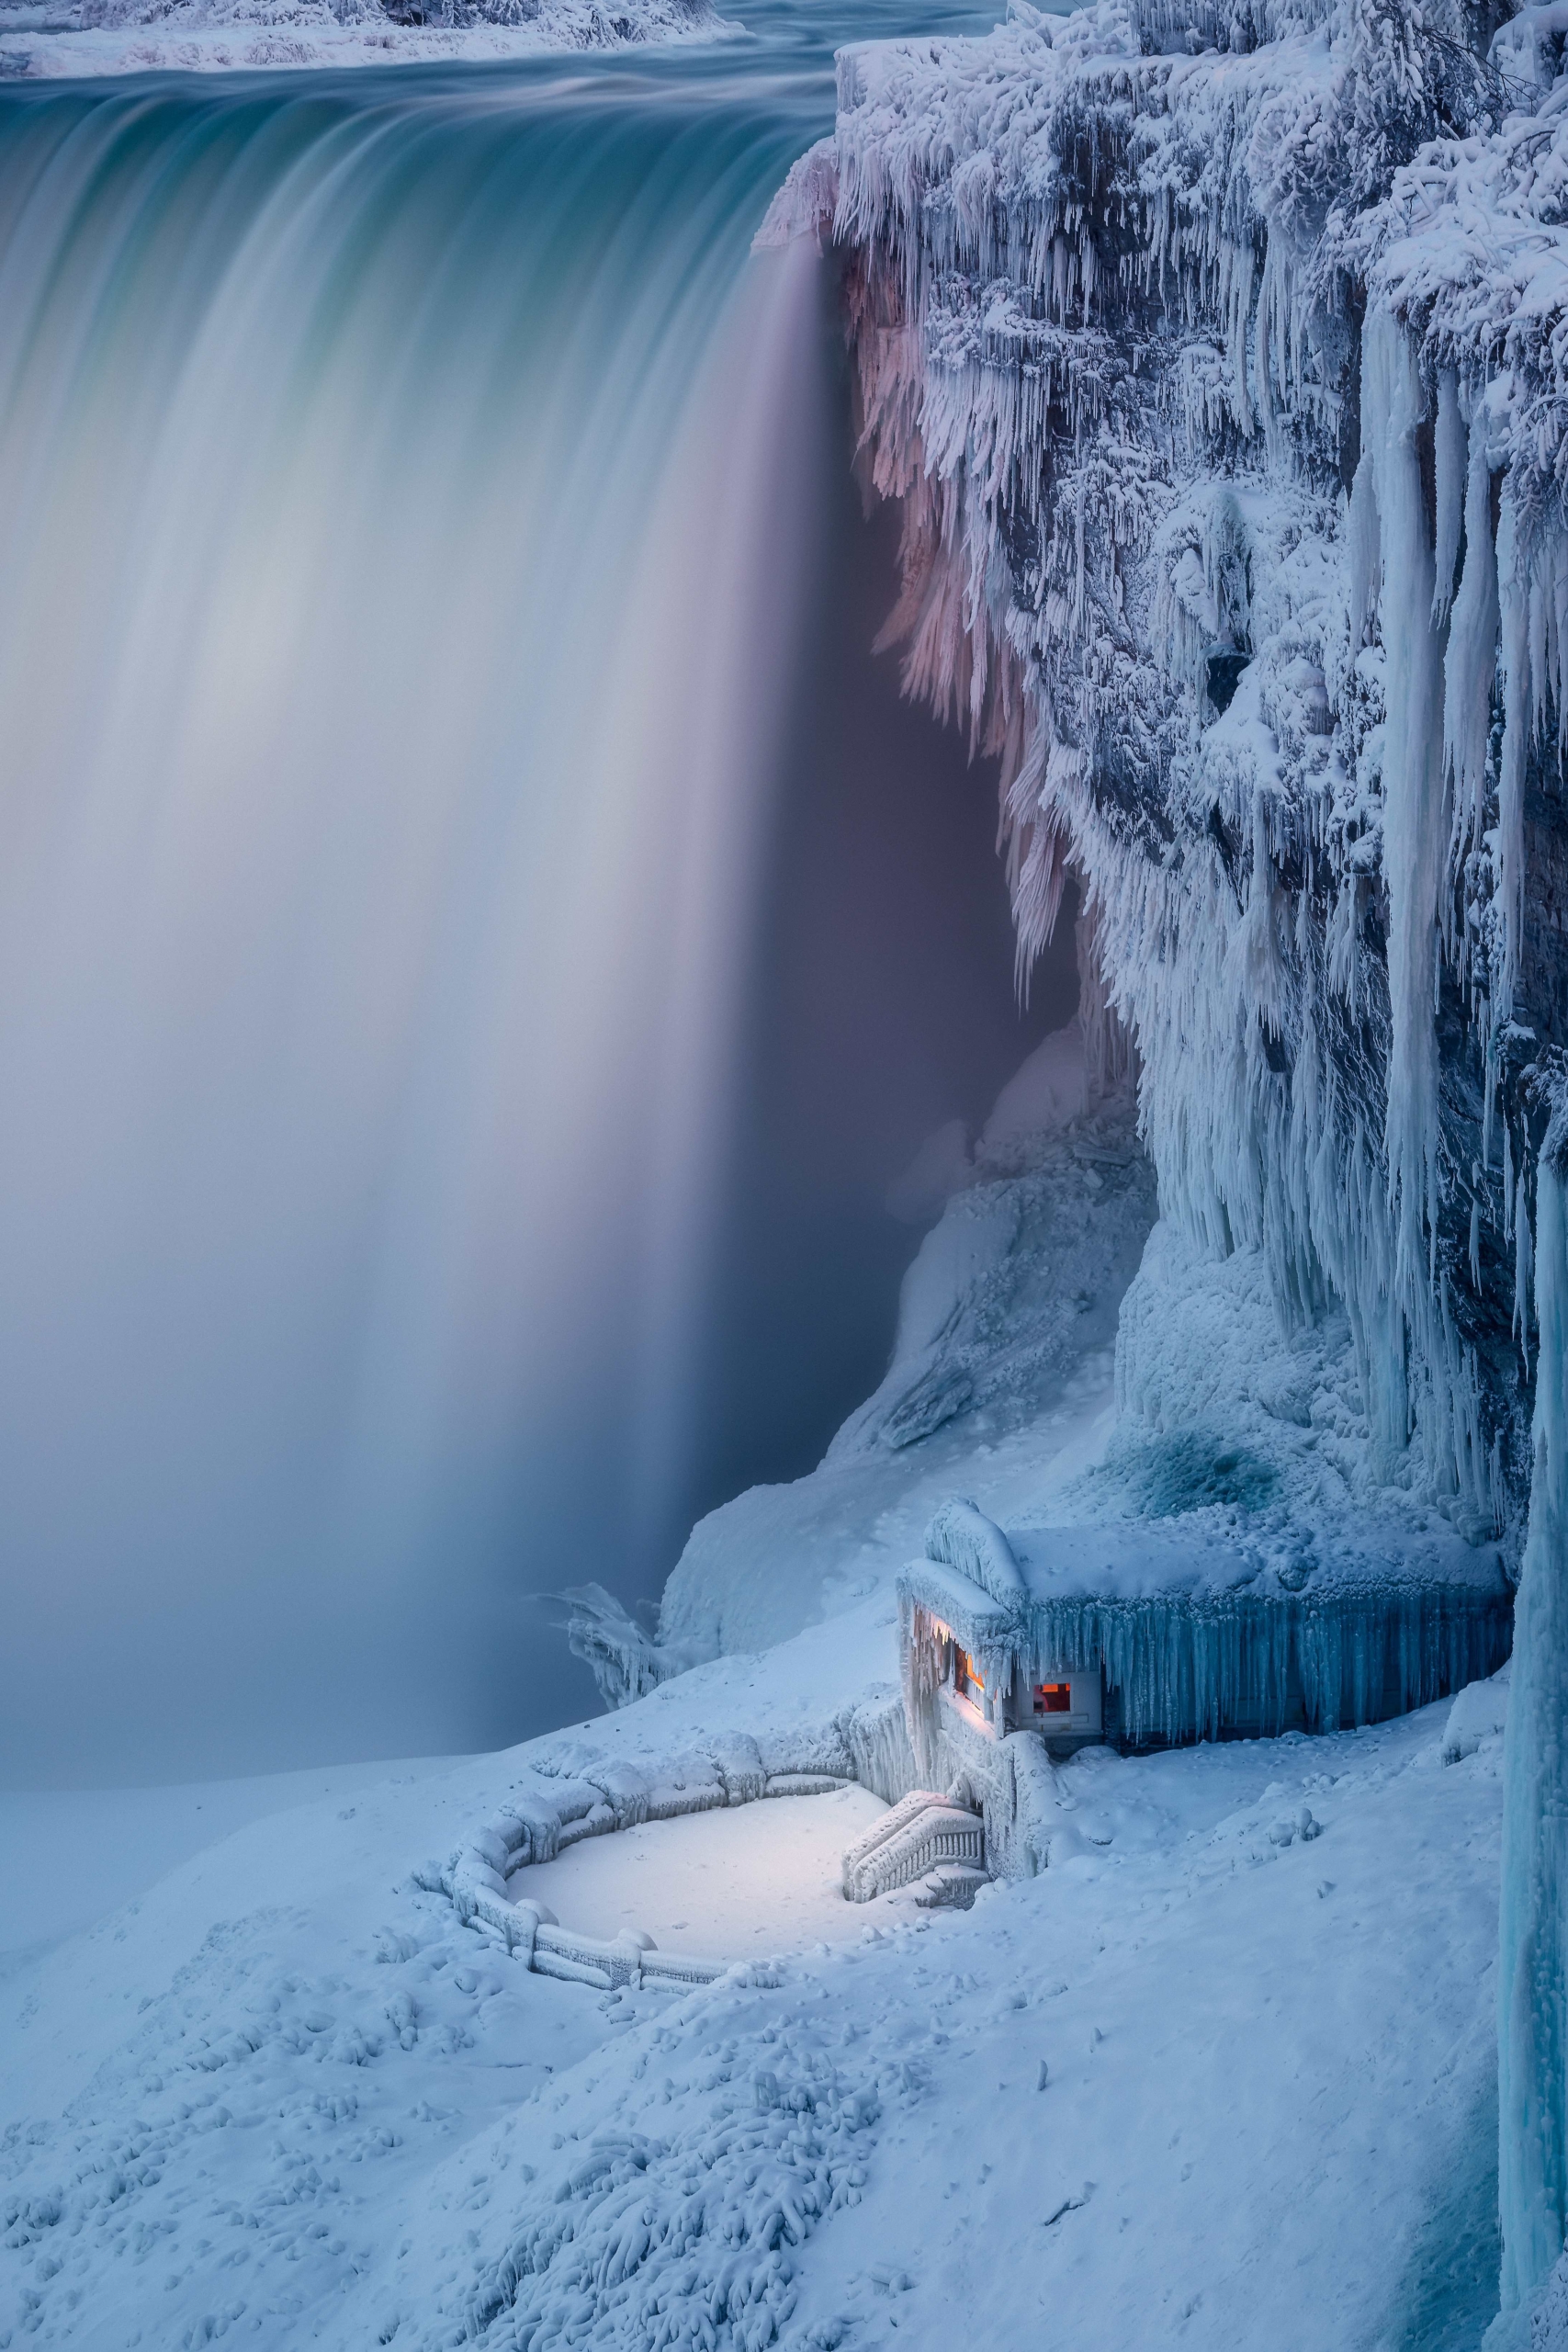 Bức ảnh “Frozen” (Băng giá) của nhiếp ảnh gia Zhenhuan Zhou. (Ảnh: Đăng dưới sự cho phép của ông Zhenhuan Zhou/Hiệp hội Khí tượng Hoàng gia)